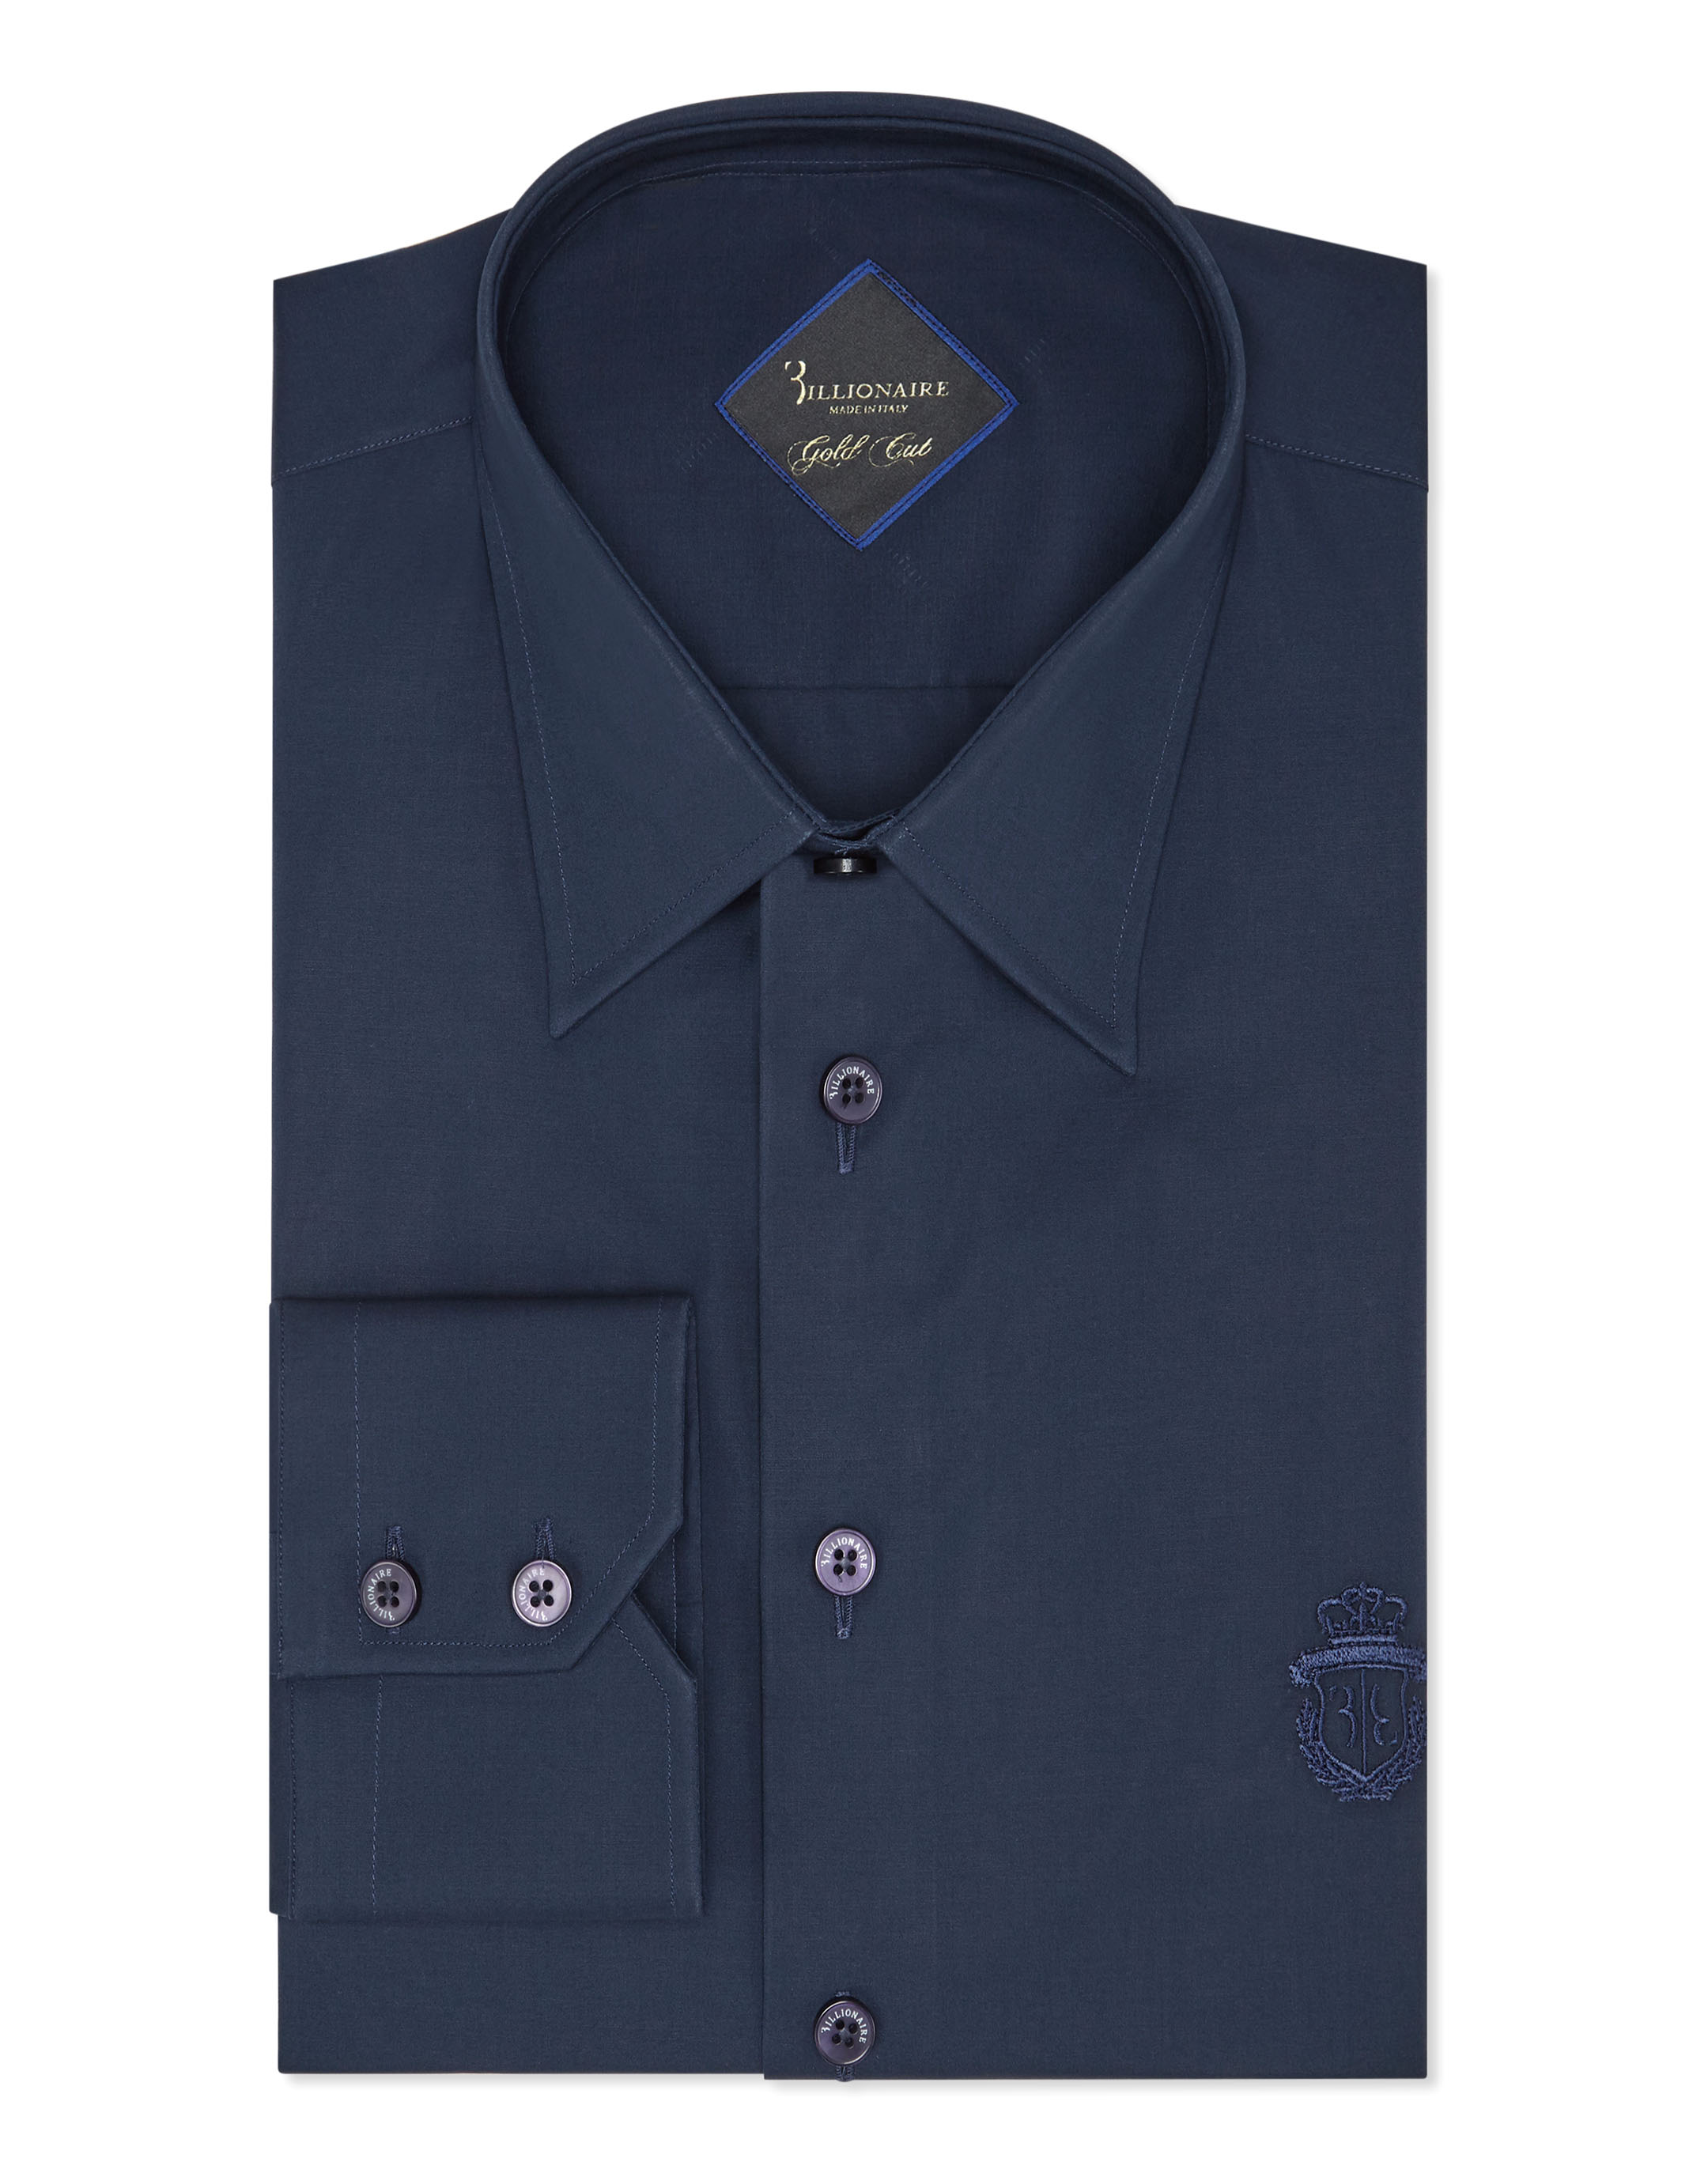 Wear - Louis Vuitton signature solid shirt Price : 1450 BDT S